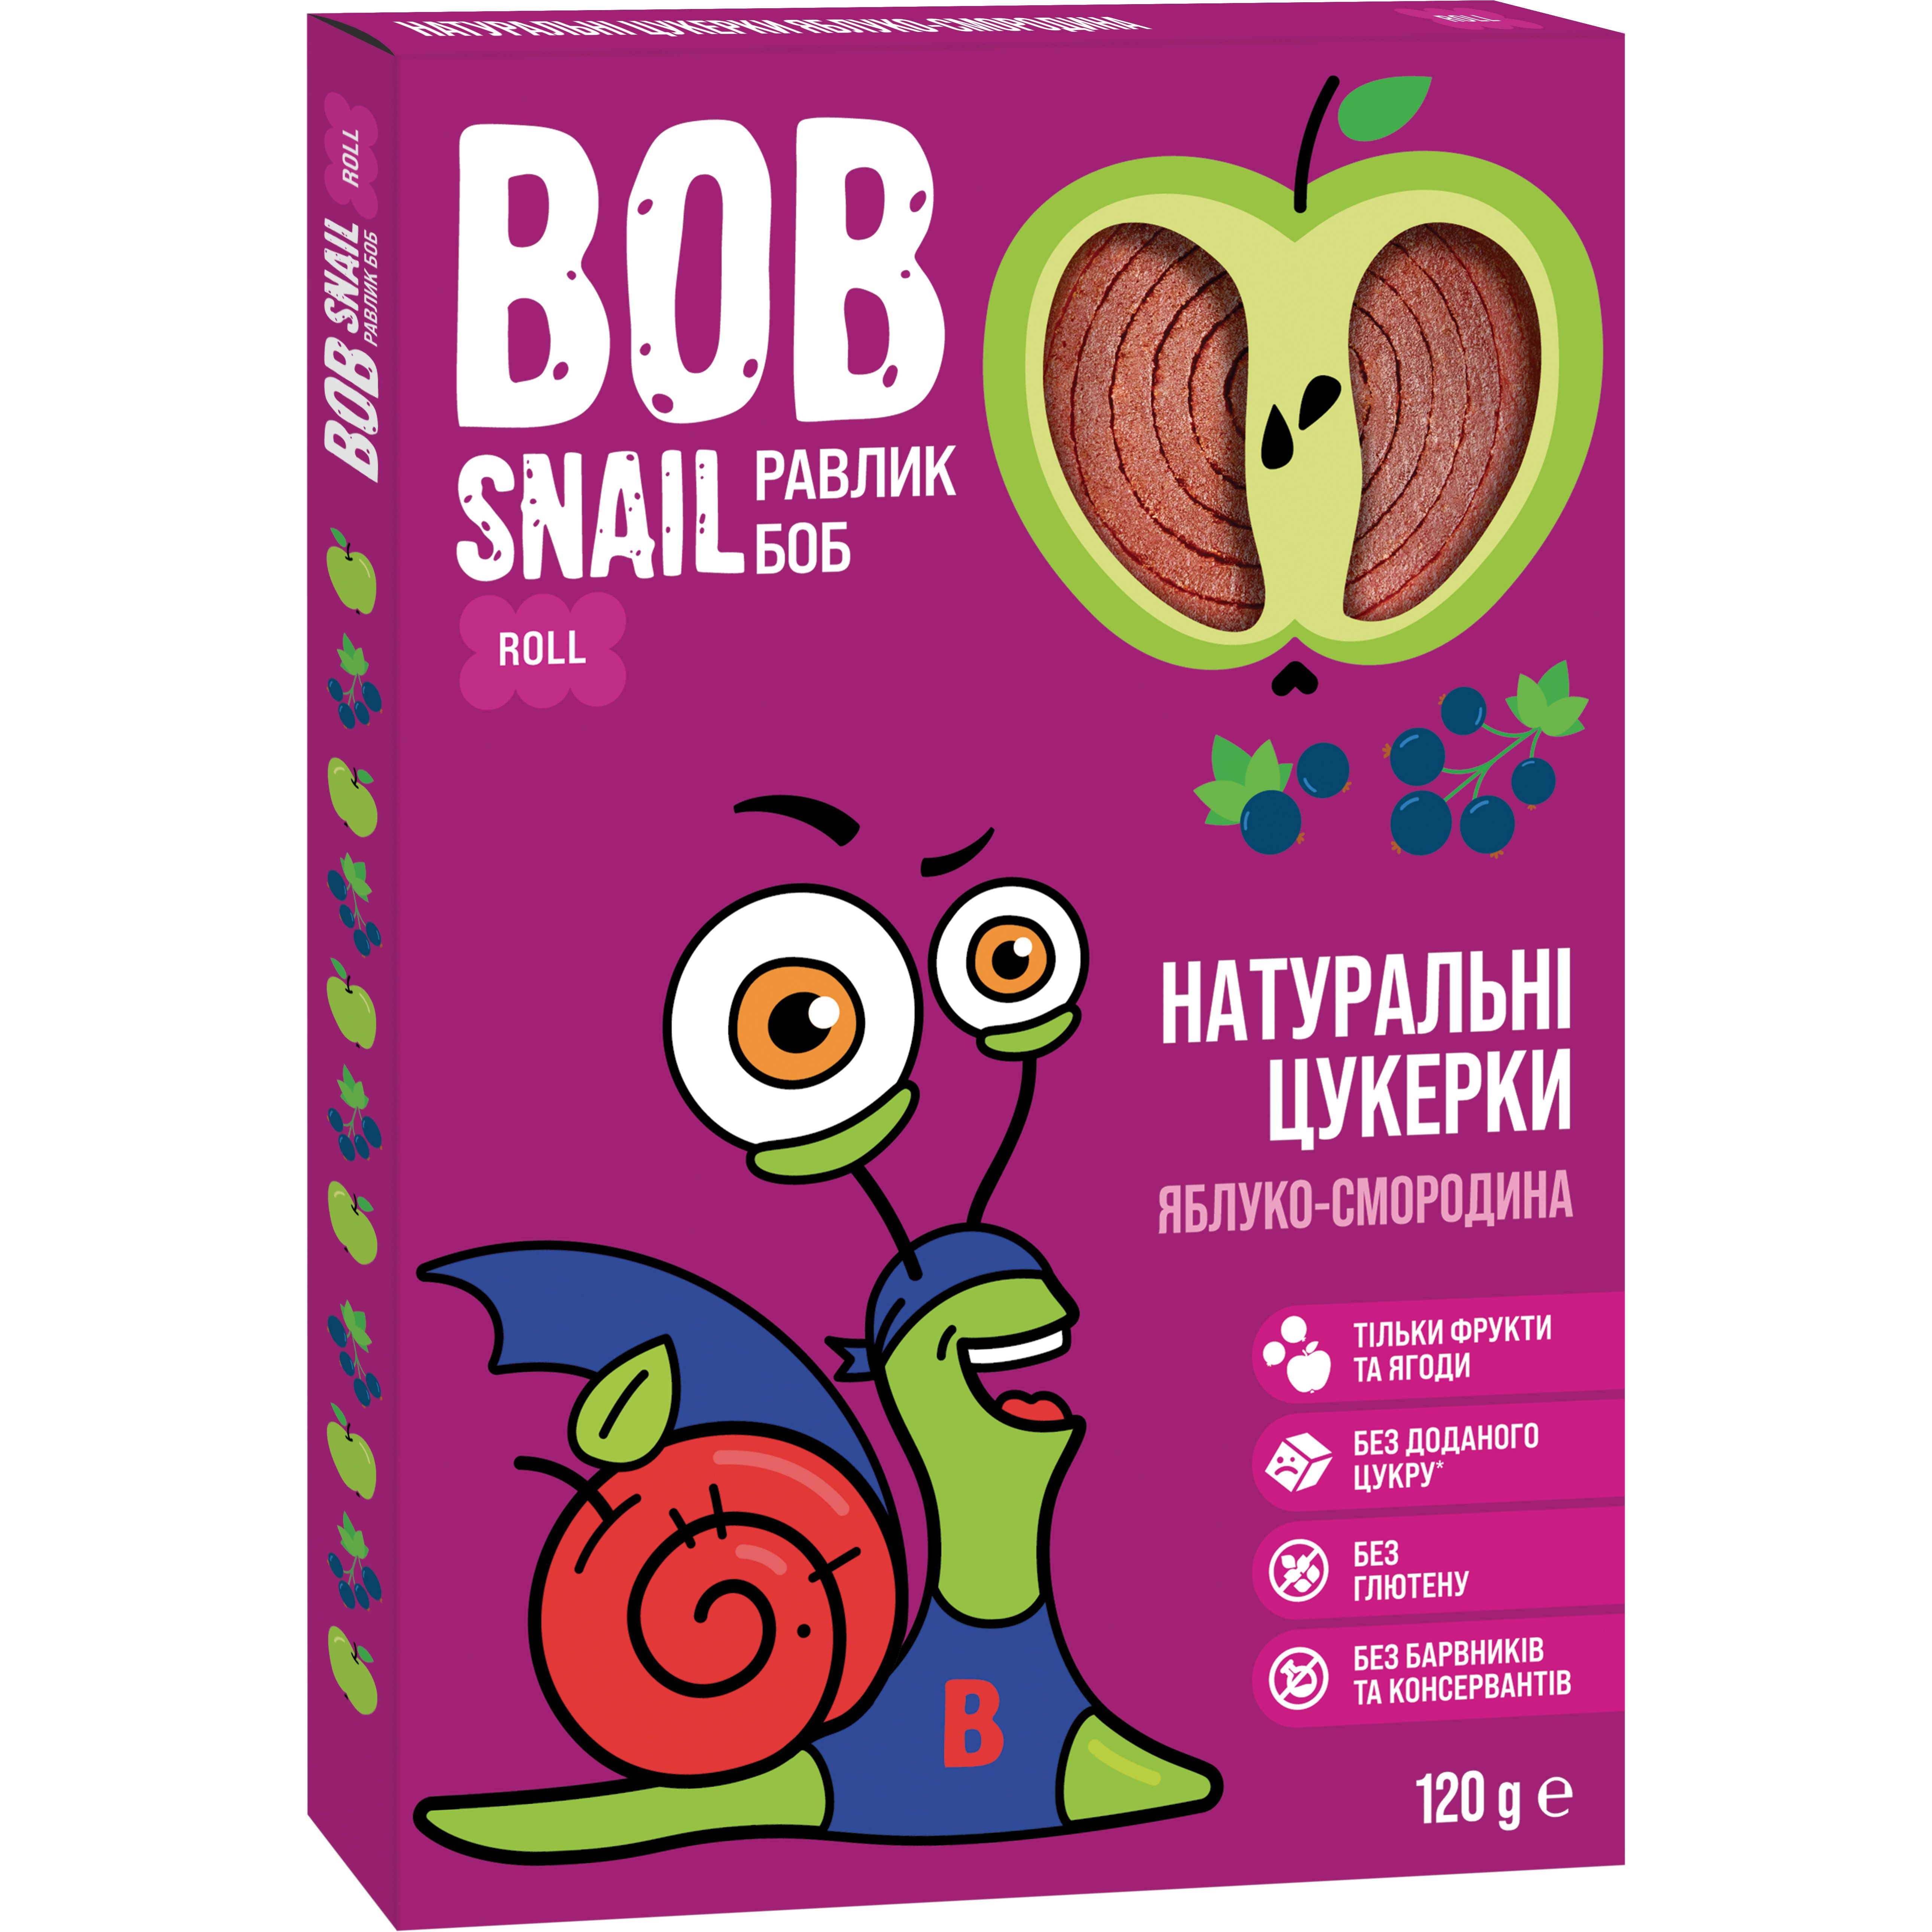 Фруктові яблучно-чорносмородинові цукерки Bob Snail 120 г - фото 1